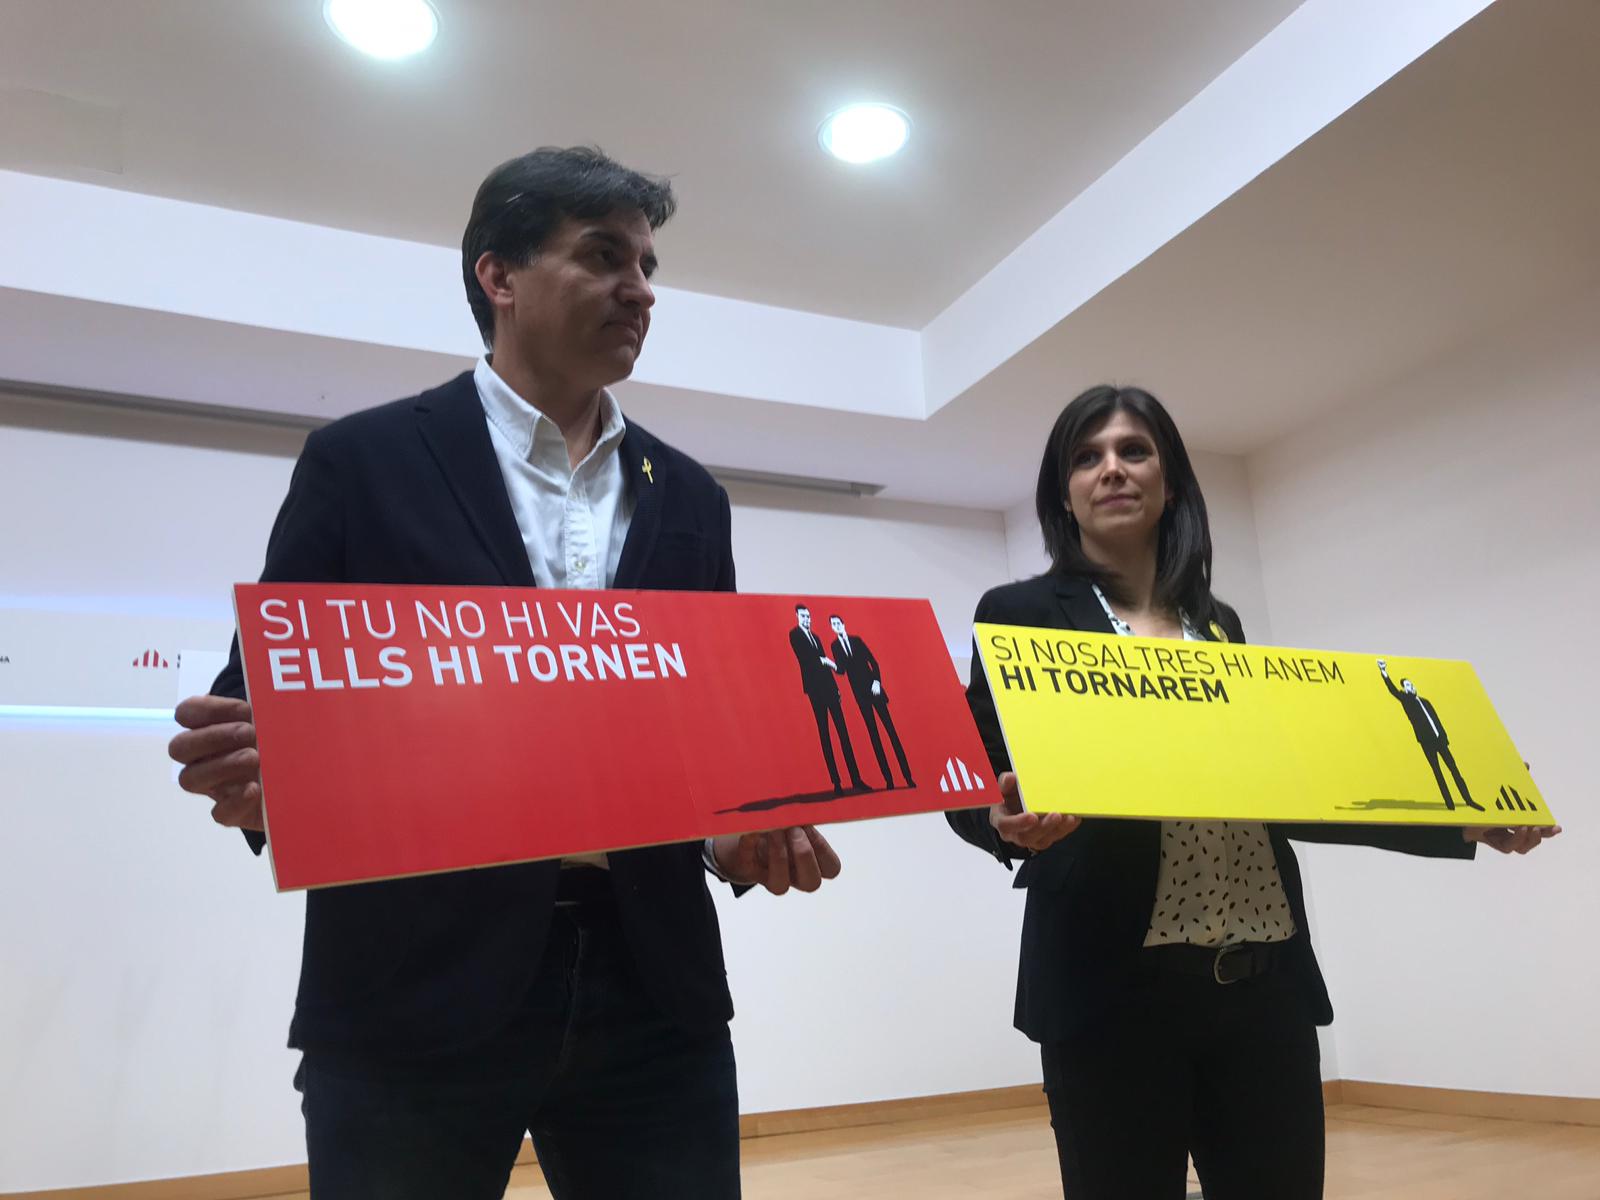 ERC entra en campaña contra Sánchez: "Votar al PSOE es lo mismo que votar Cs"